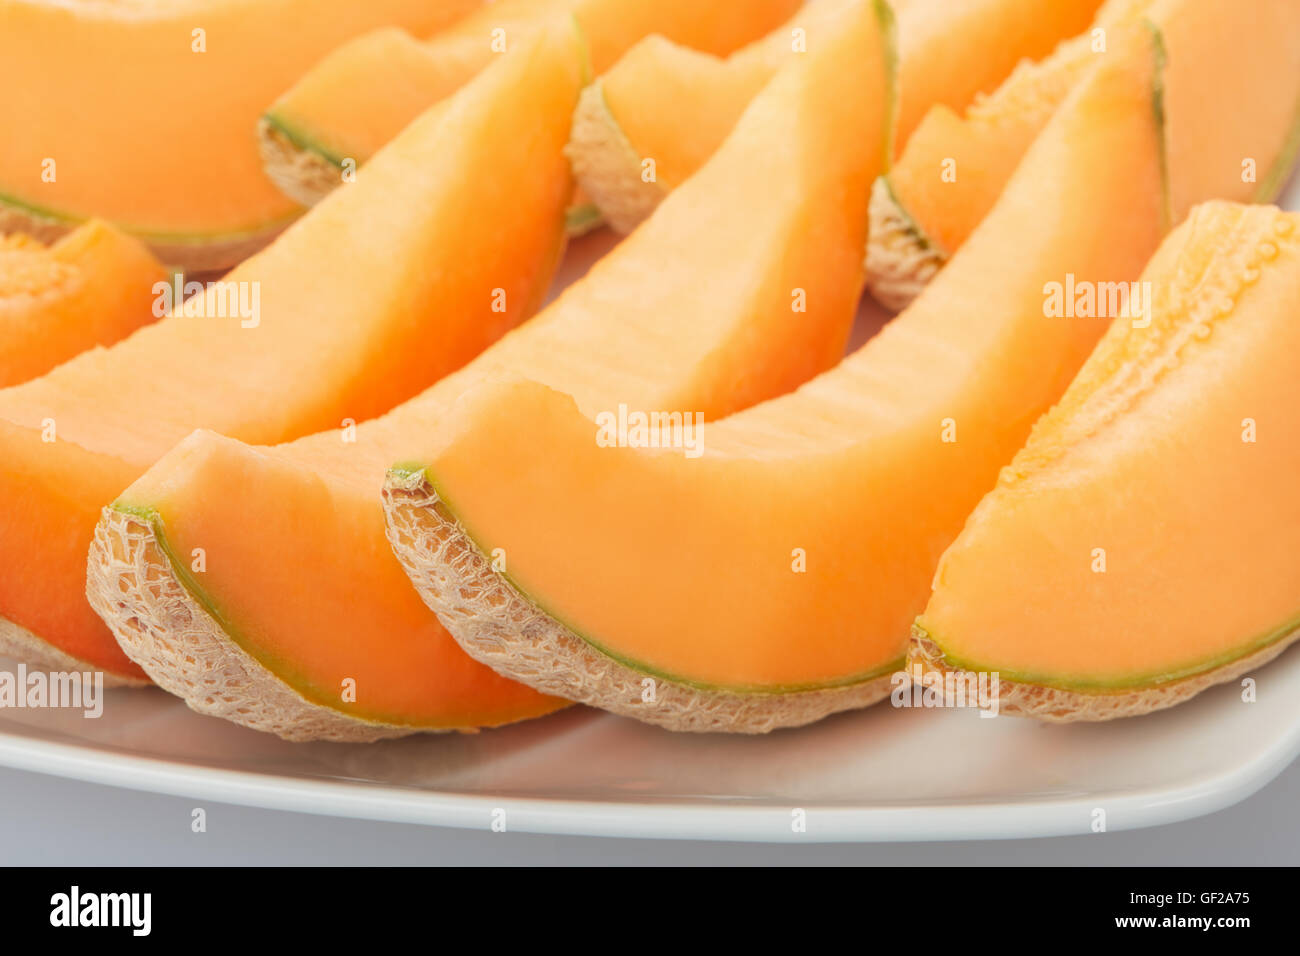 Melon cantaloup, les tranches d'orange sur lave Banque D'Images